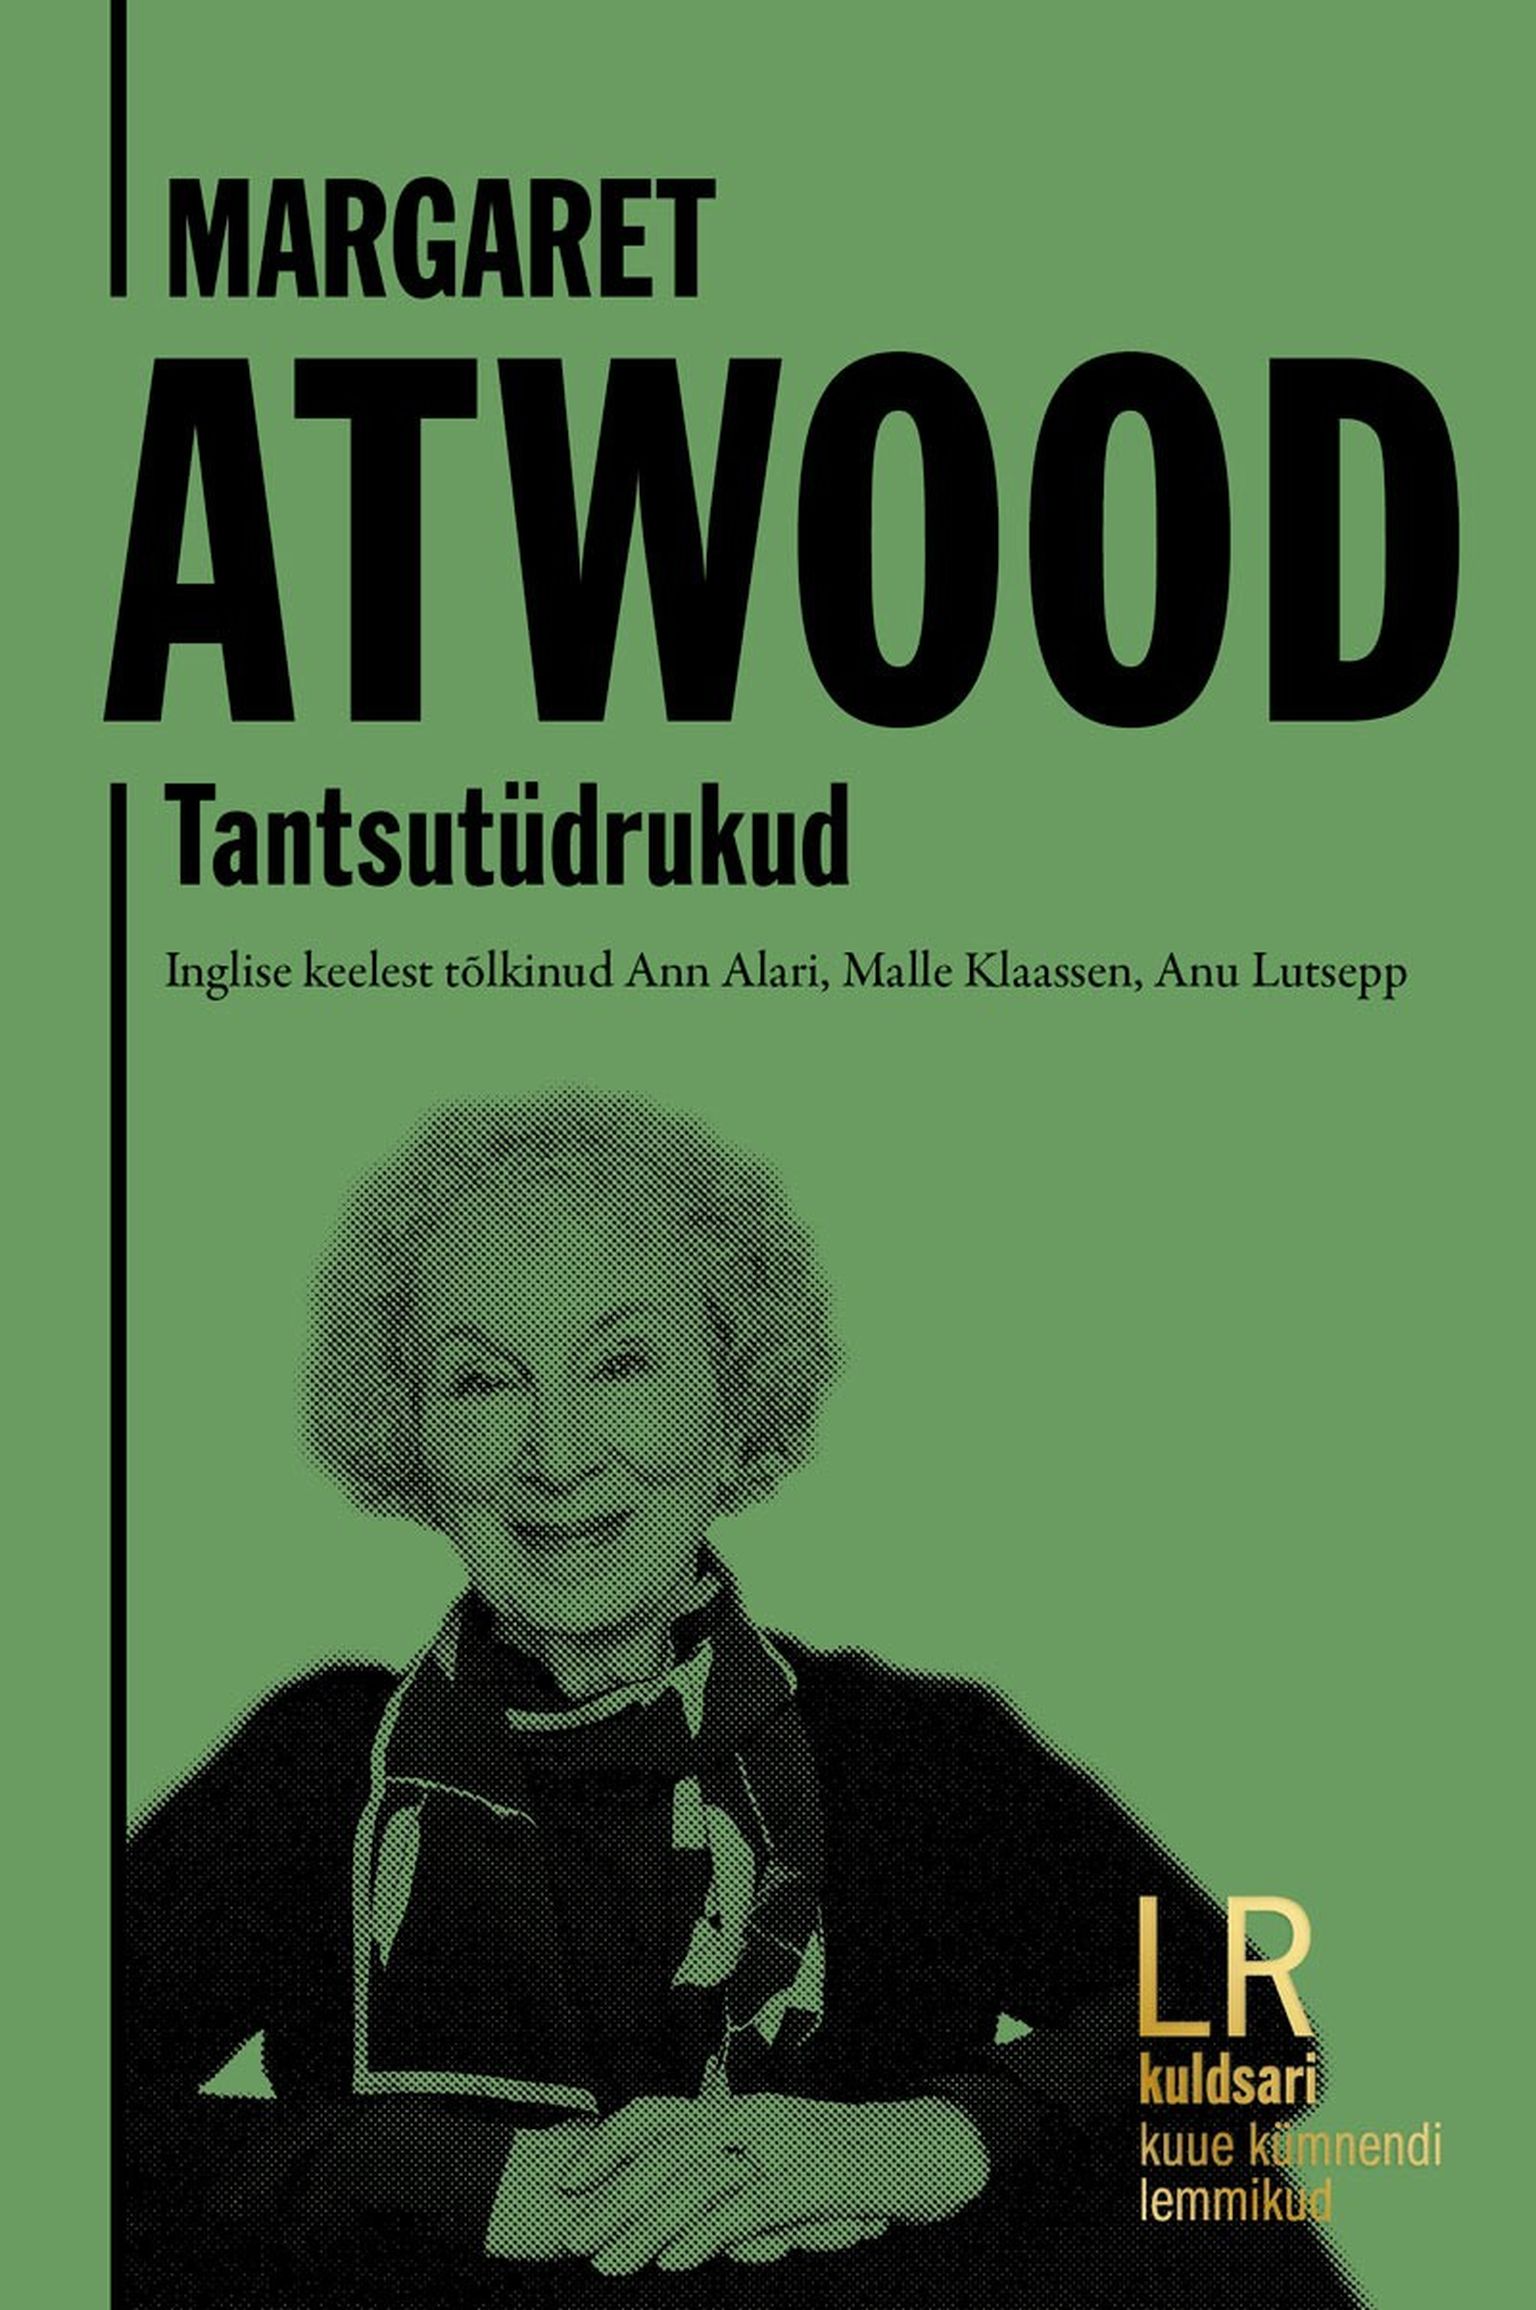 Margaret Atwood, «Tantsutüdrukud».